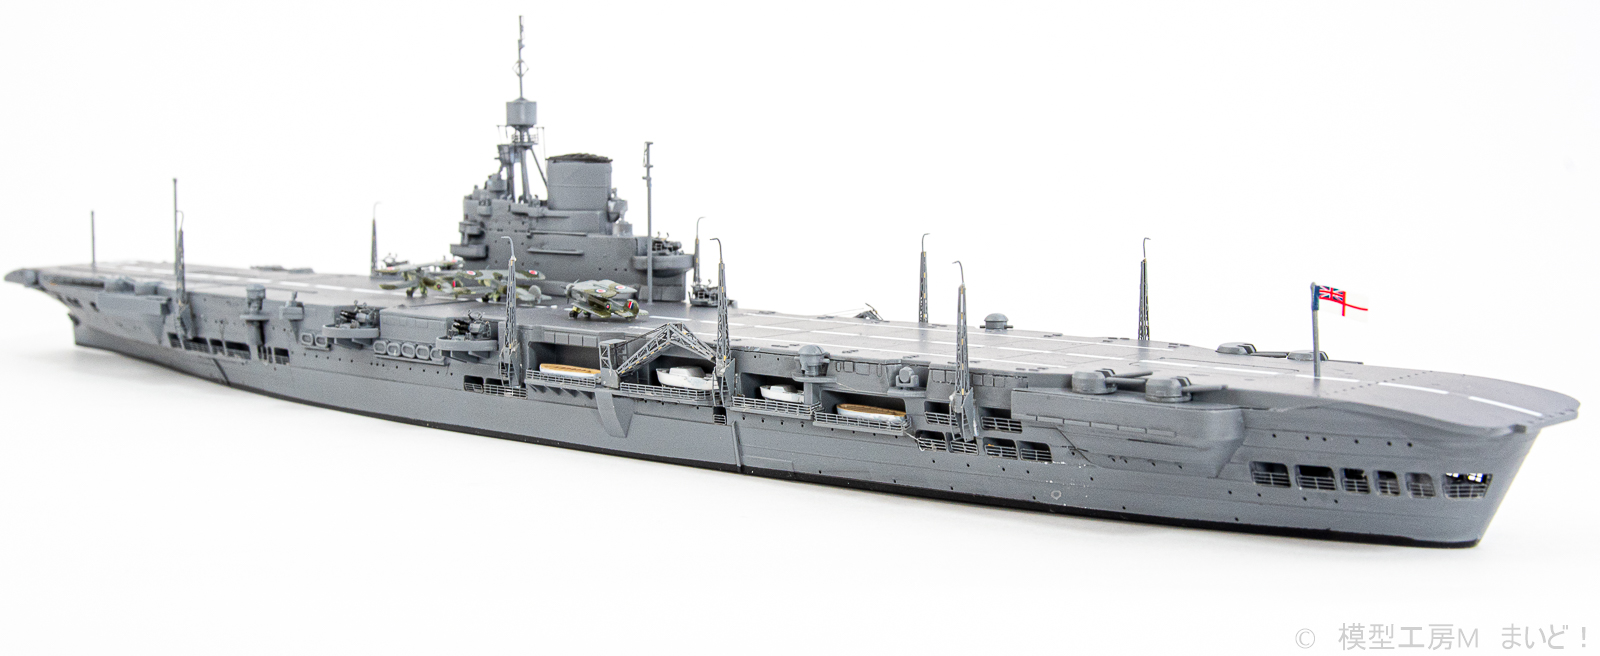 アオシマ 1/700 イギリス海軍航空母艦 イラストリアス 完成 HMS 